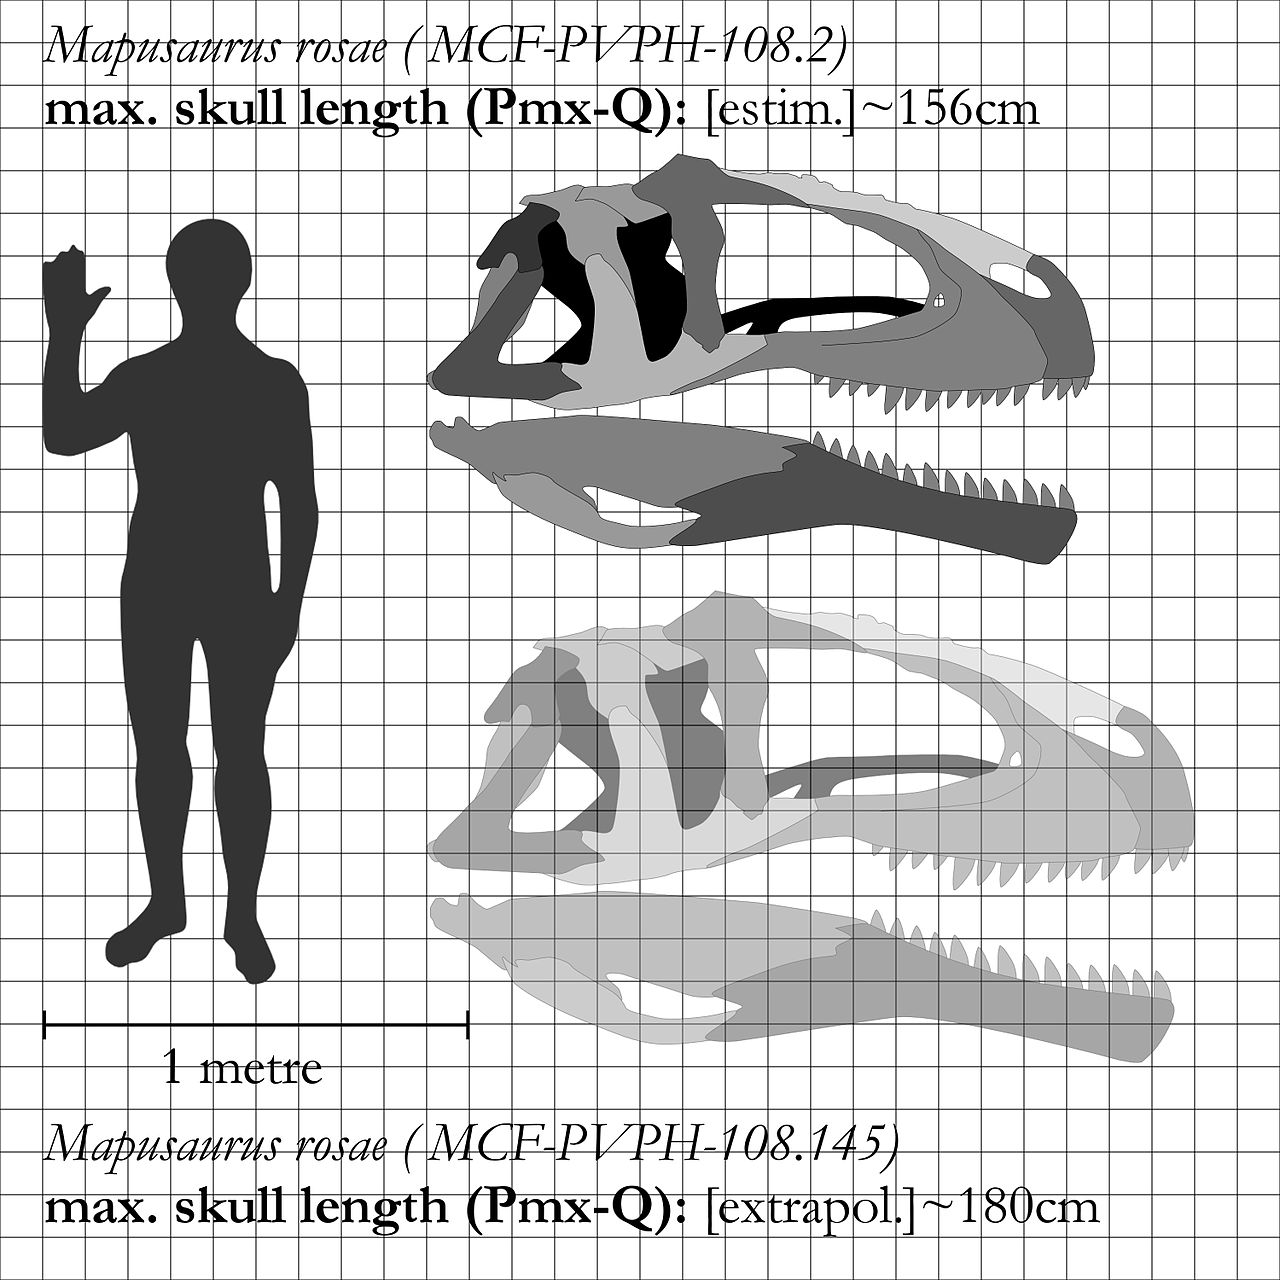 Možná jedna z největších známých lebek suchozemského predátora vůbec. U typového exempláře druhu Mapusaurus roseae měří lebka na délku „jen“ 156 cm, u většího jedince, známého pouze z kosterních fragmentů, však mohla být dlouhá kolem 180 cm. Je tedy 